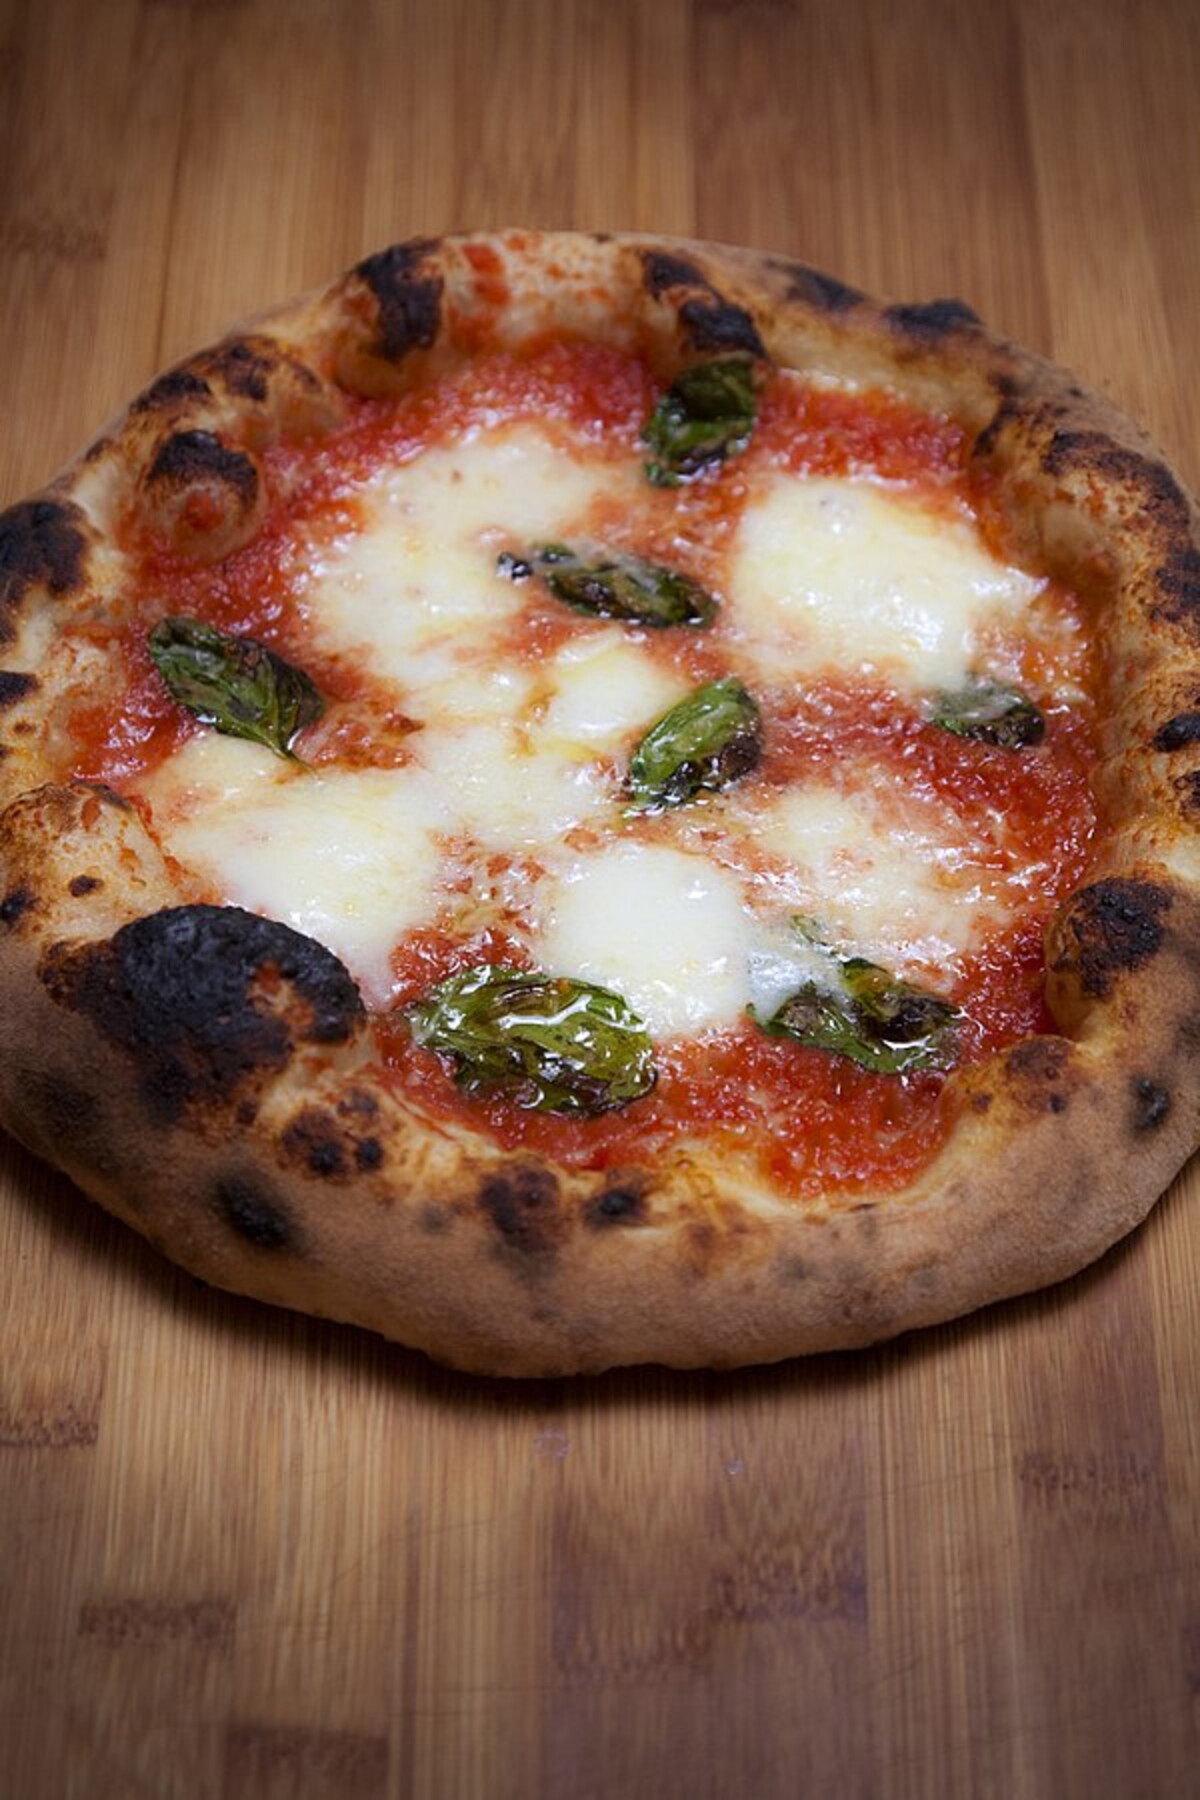 1. místo: Pizza – vítězství v žebříčku si vysloužila neapolská pizza, označovaná jako královna všech pizz. V Neapoli se pizza stala populární v 18. století jako levné a výživné jídlo, které konzumovali rolníci. Moderní pizza, jak ji známe dnes, se vyvinula z neapolských placiček, které se potíraly sádlem, solí a česnekem.